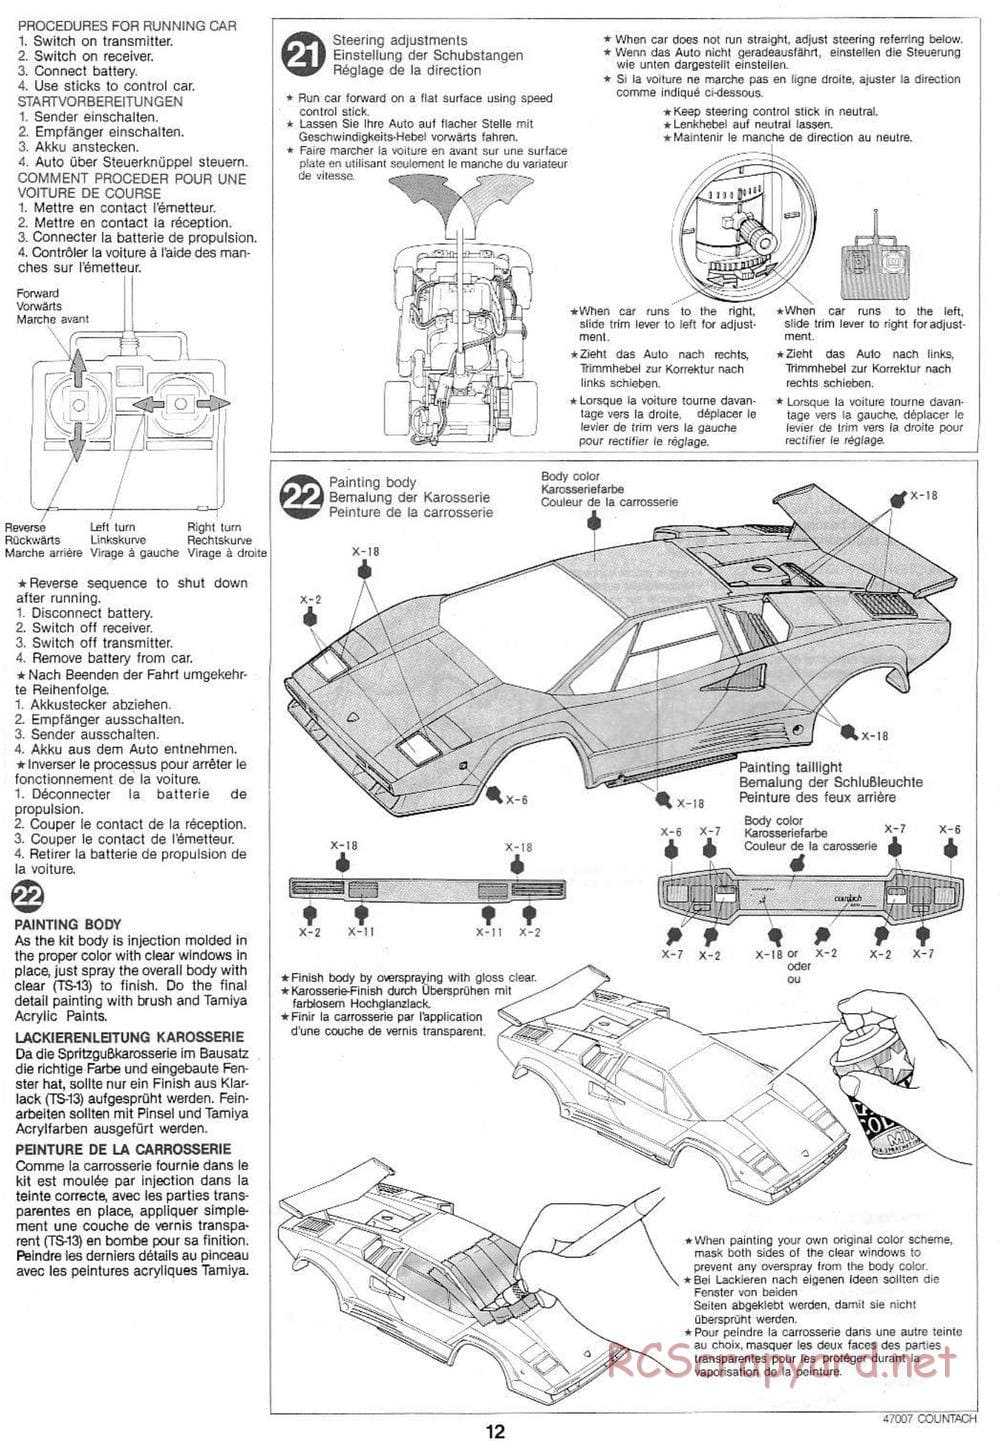 Tamiya - Tamtech - Lamborghini Countach 5000 Chassis - Manual - Page 12